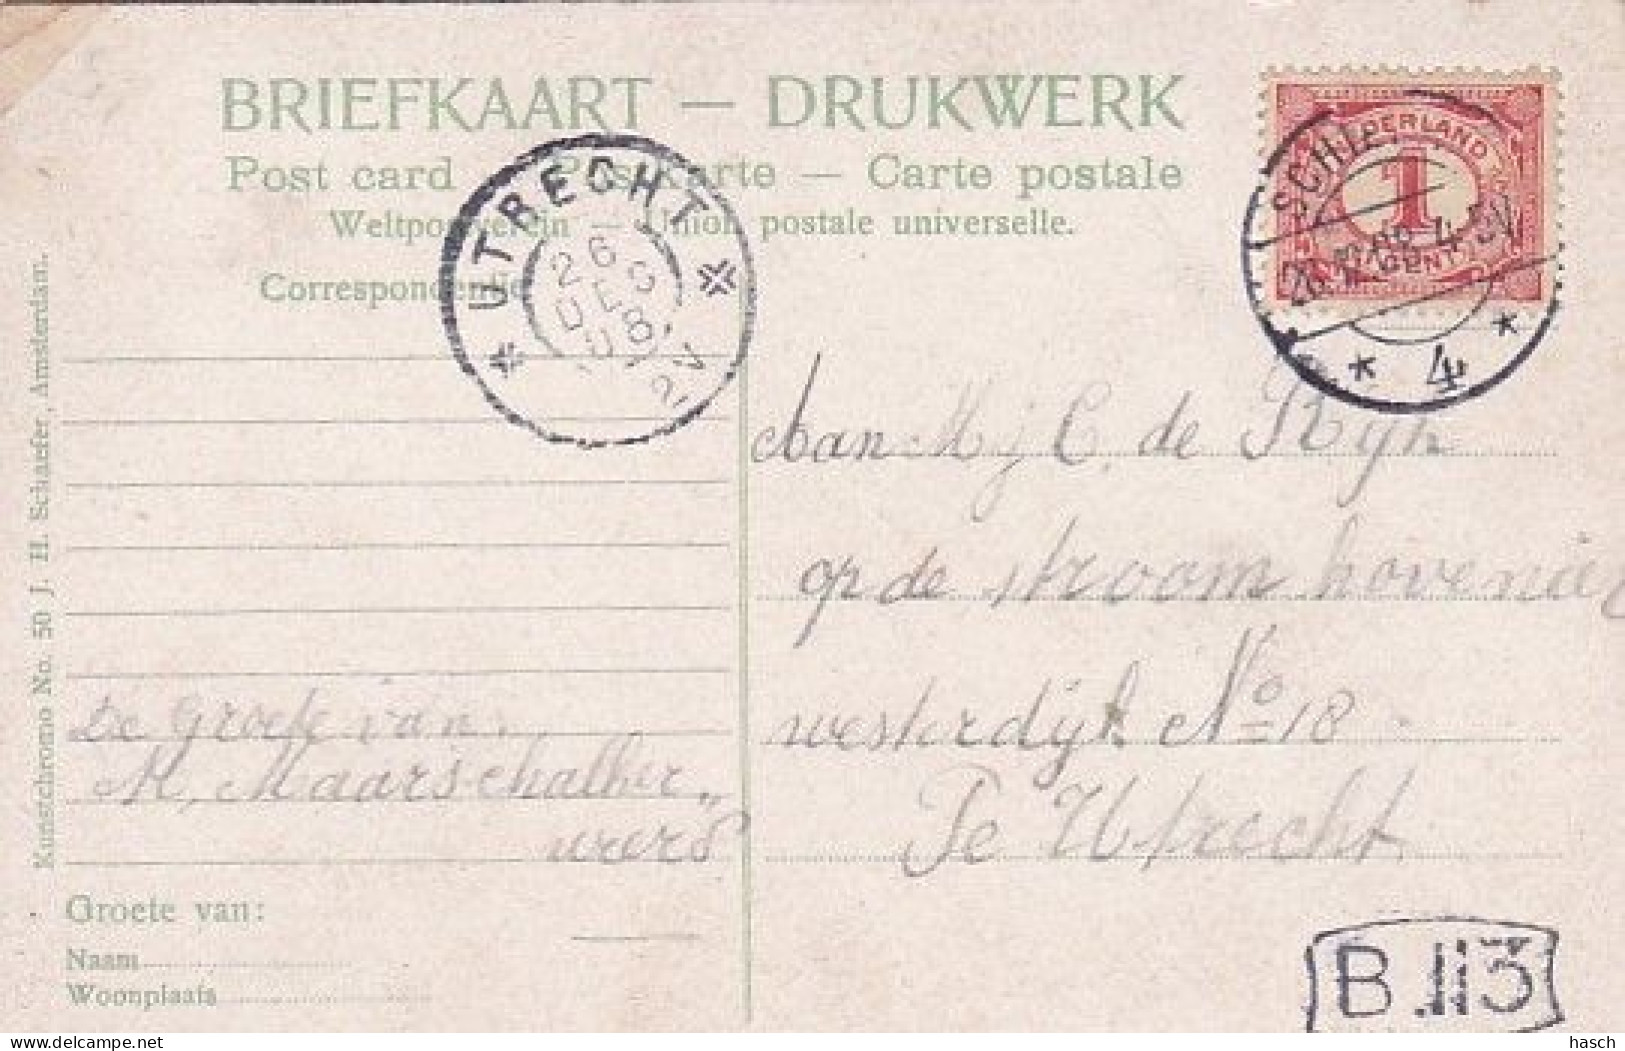 485220Schiedam, Lange Nieuwstraat. 1908. (plakker Rechtsboven)  - Schiedam